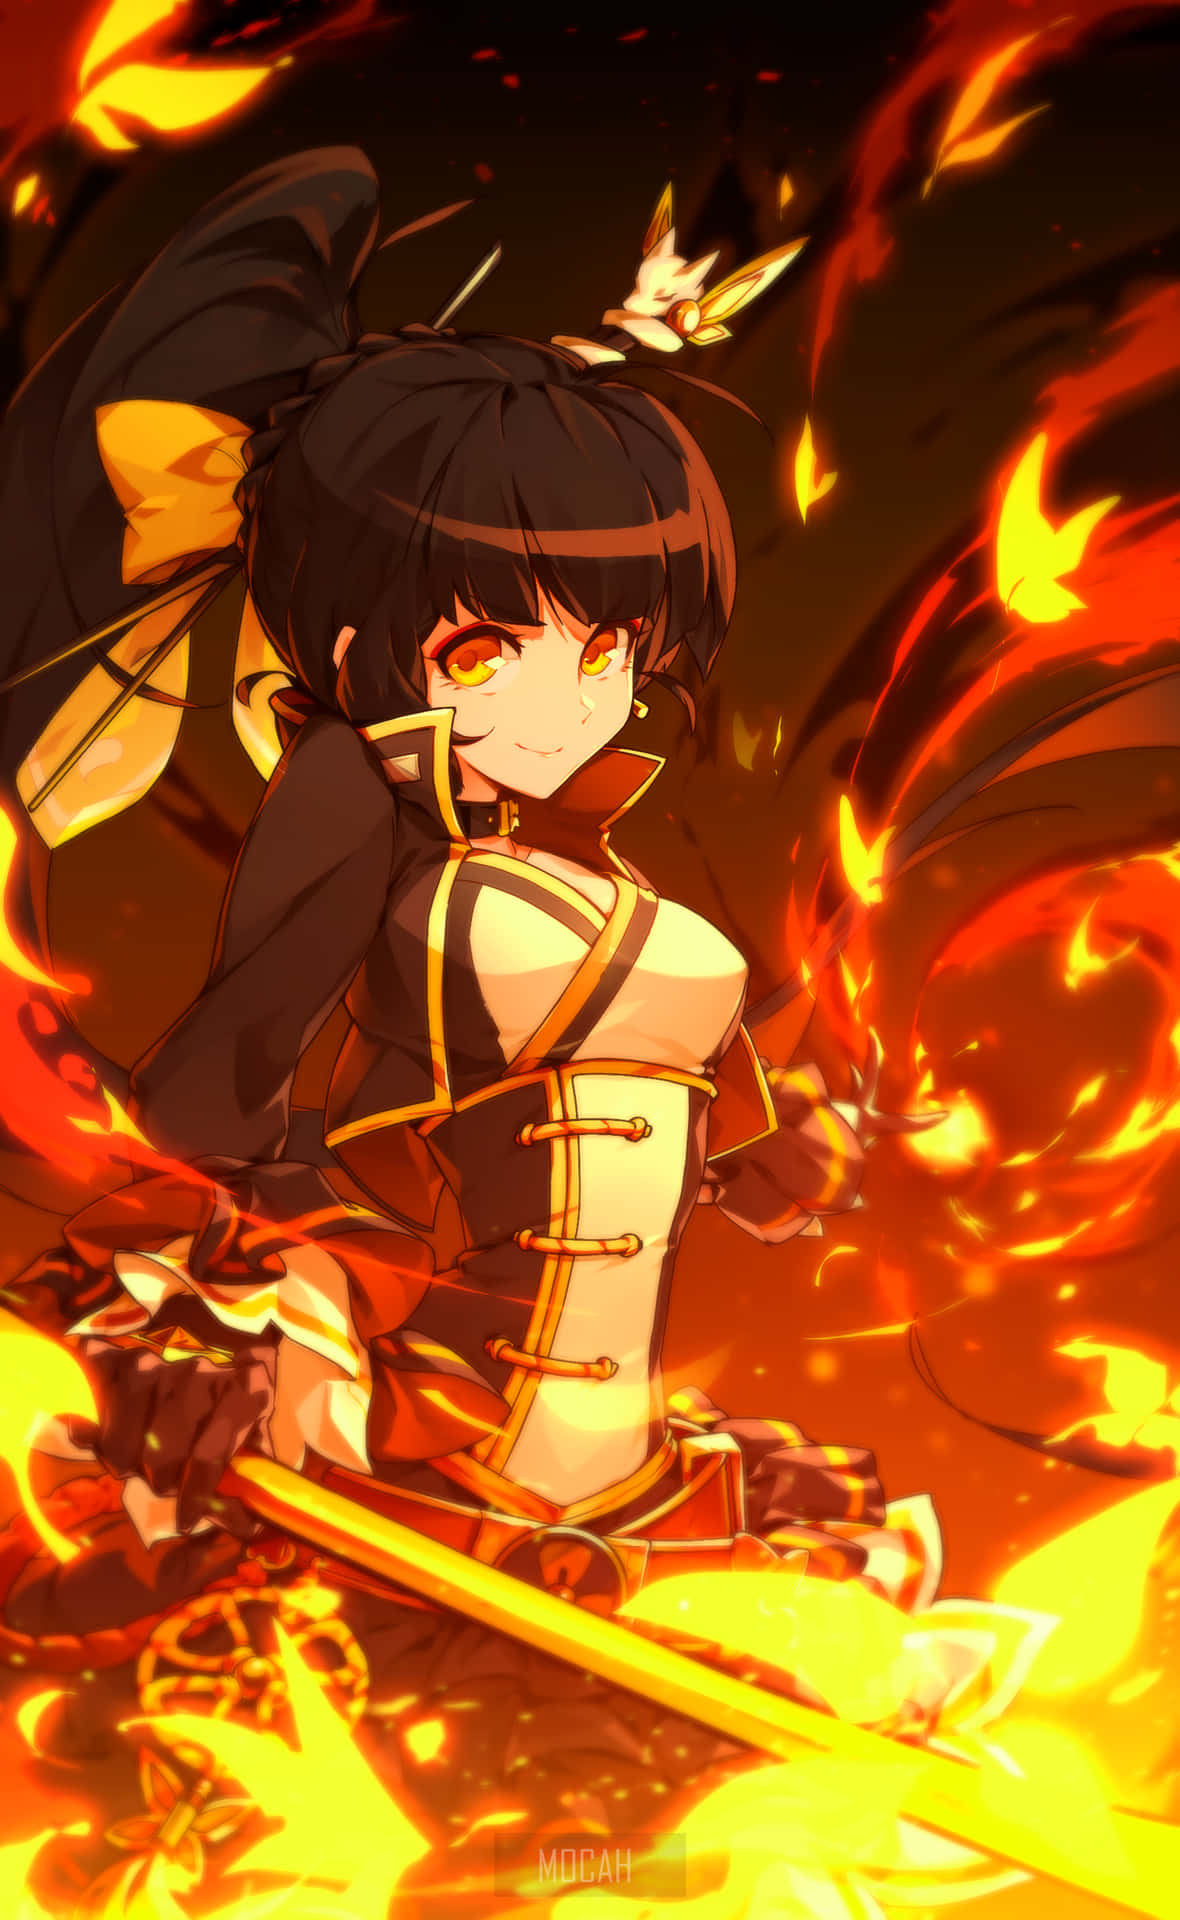 Kännden Brännande Hettan Med Denna Flammande Anime Fire På Ditt Datorskärmsbakgrundsbild Eller Mobilbakgrundsbild! Wallpaper